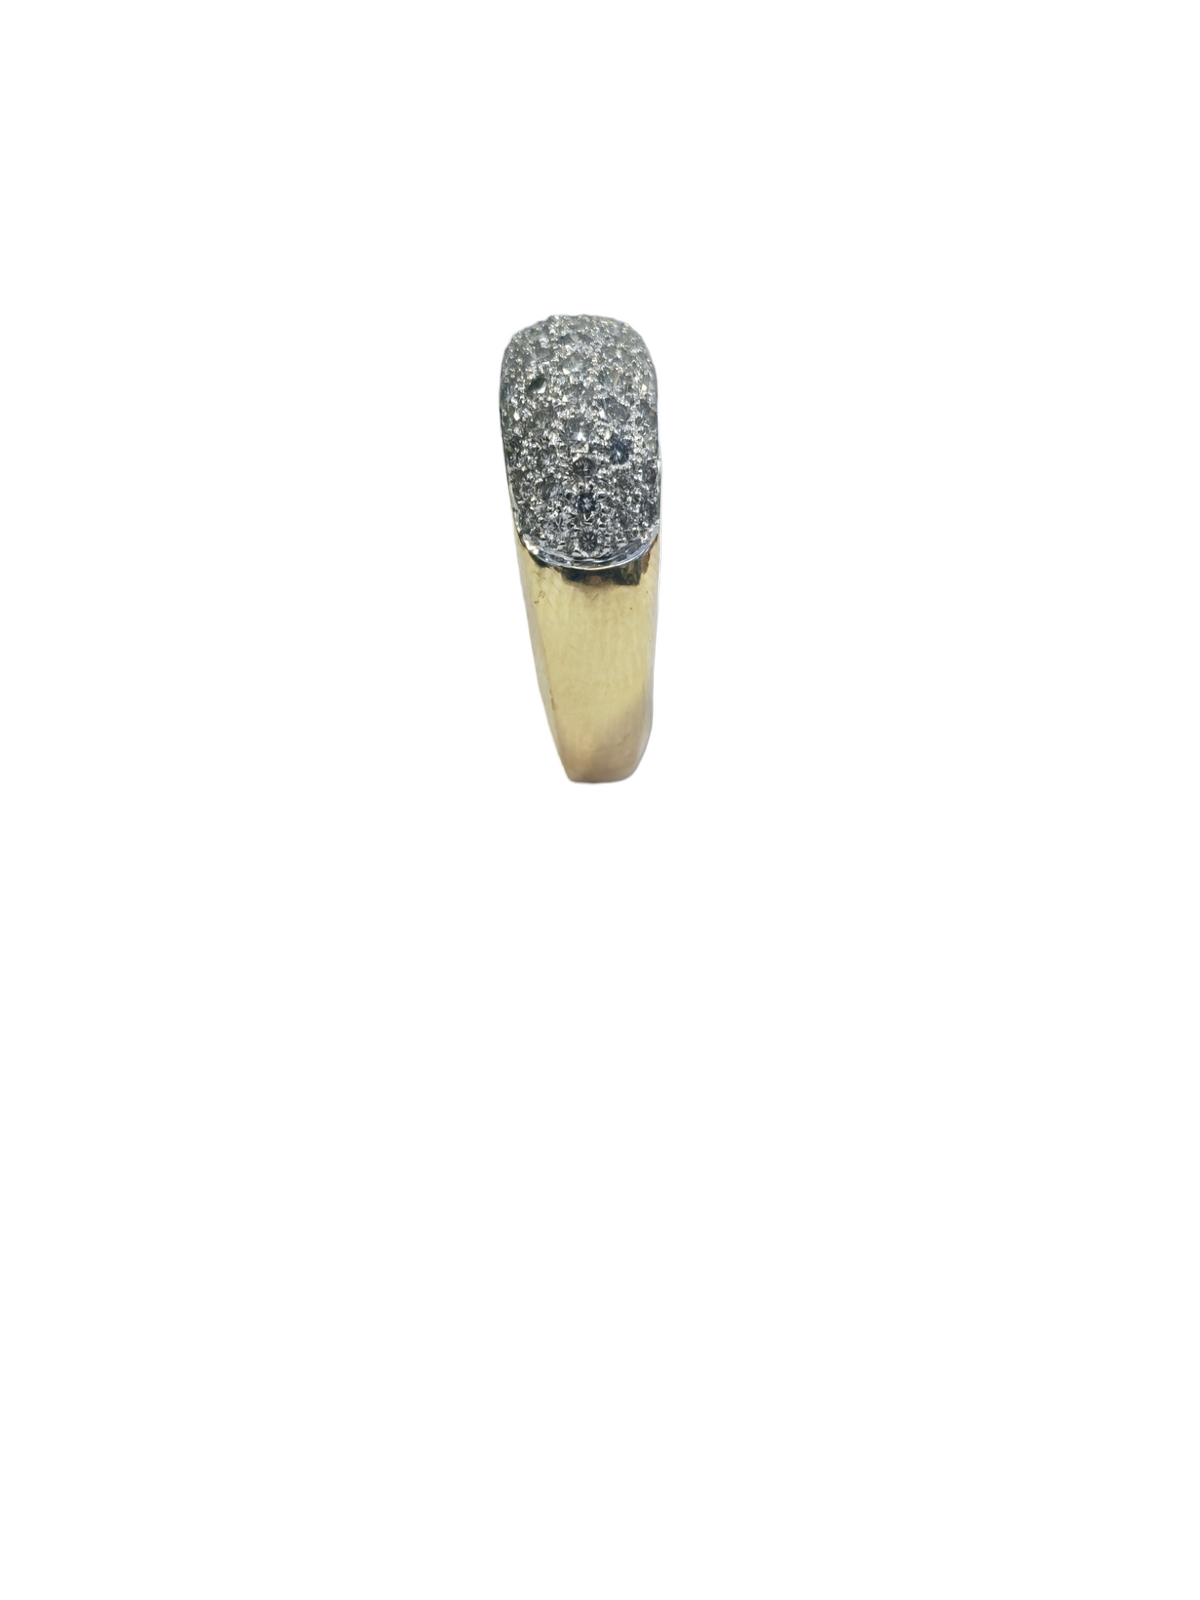 14-karat yellow/white gold pave diamond ring size 6.75(US)